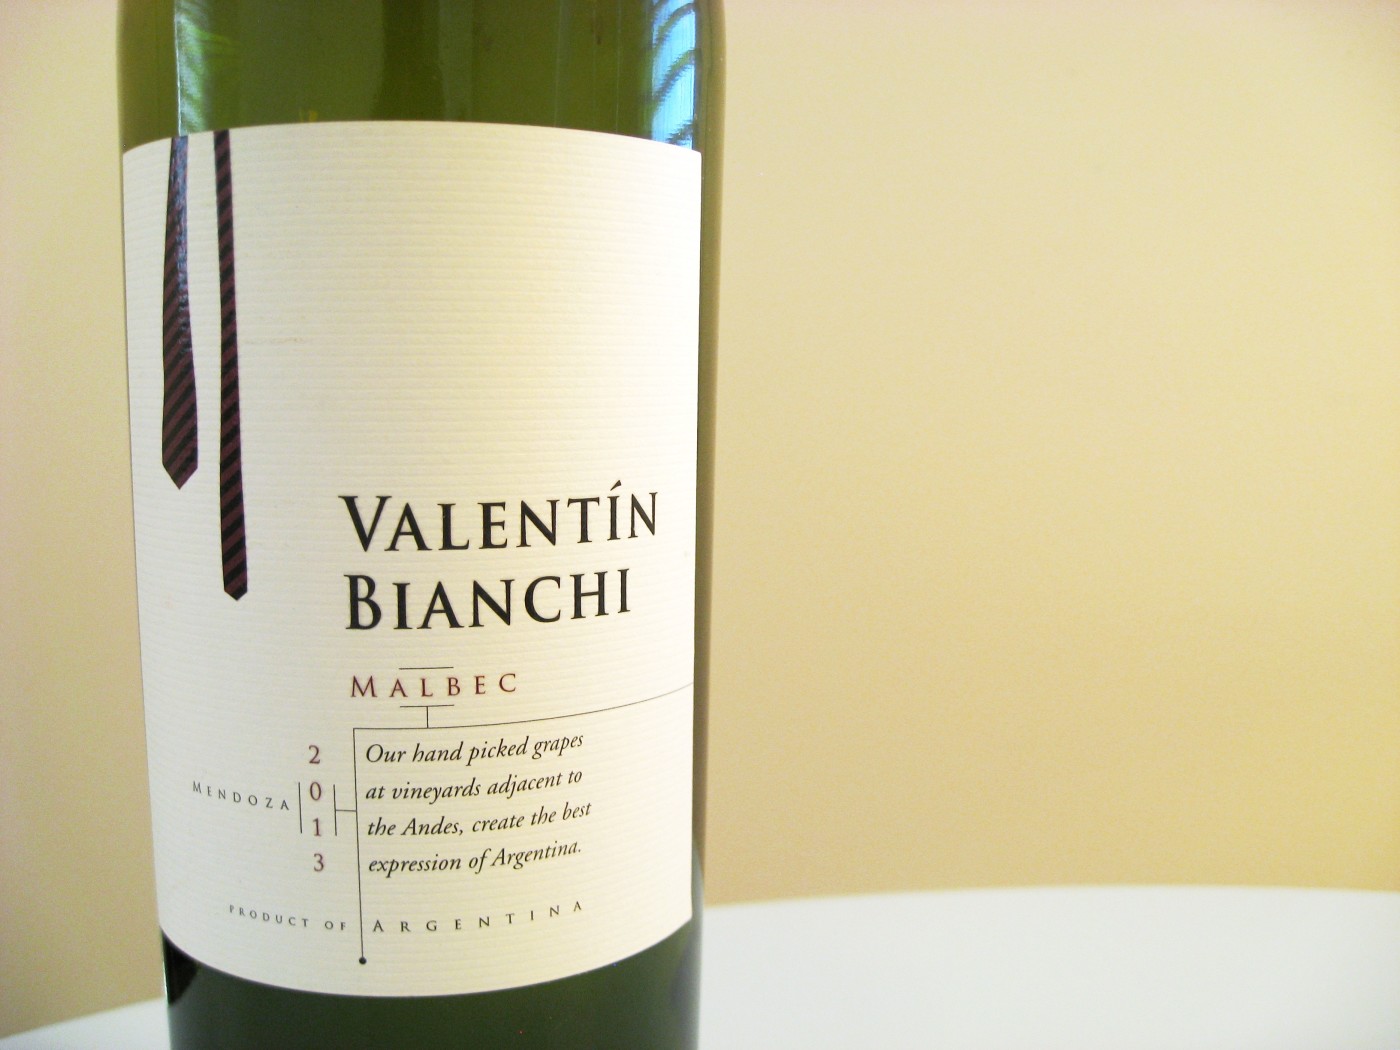 Valentin Bianchi, Malbec 2013, Mendoza, Argentina, Wine Casual